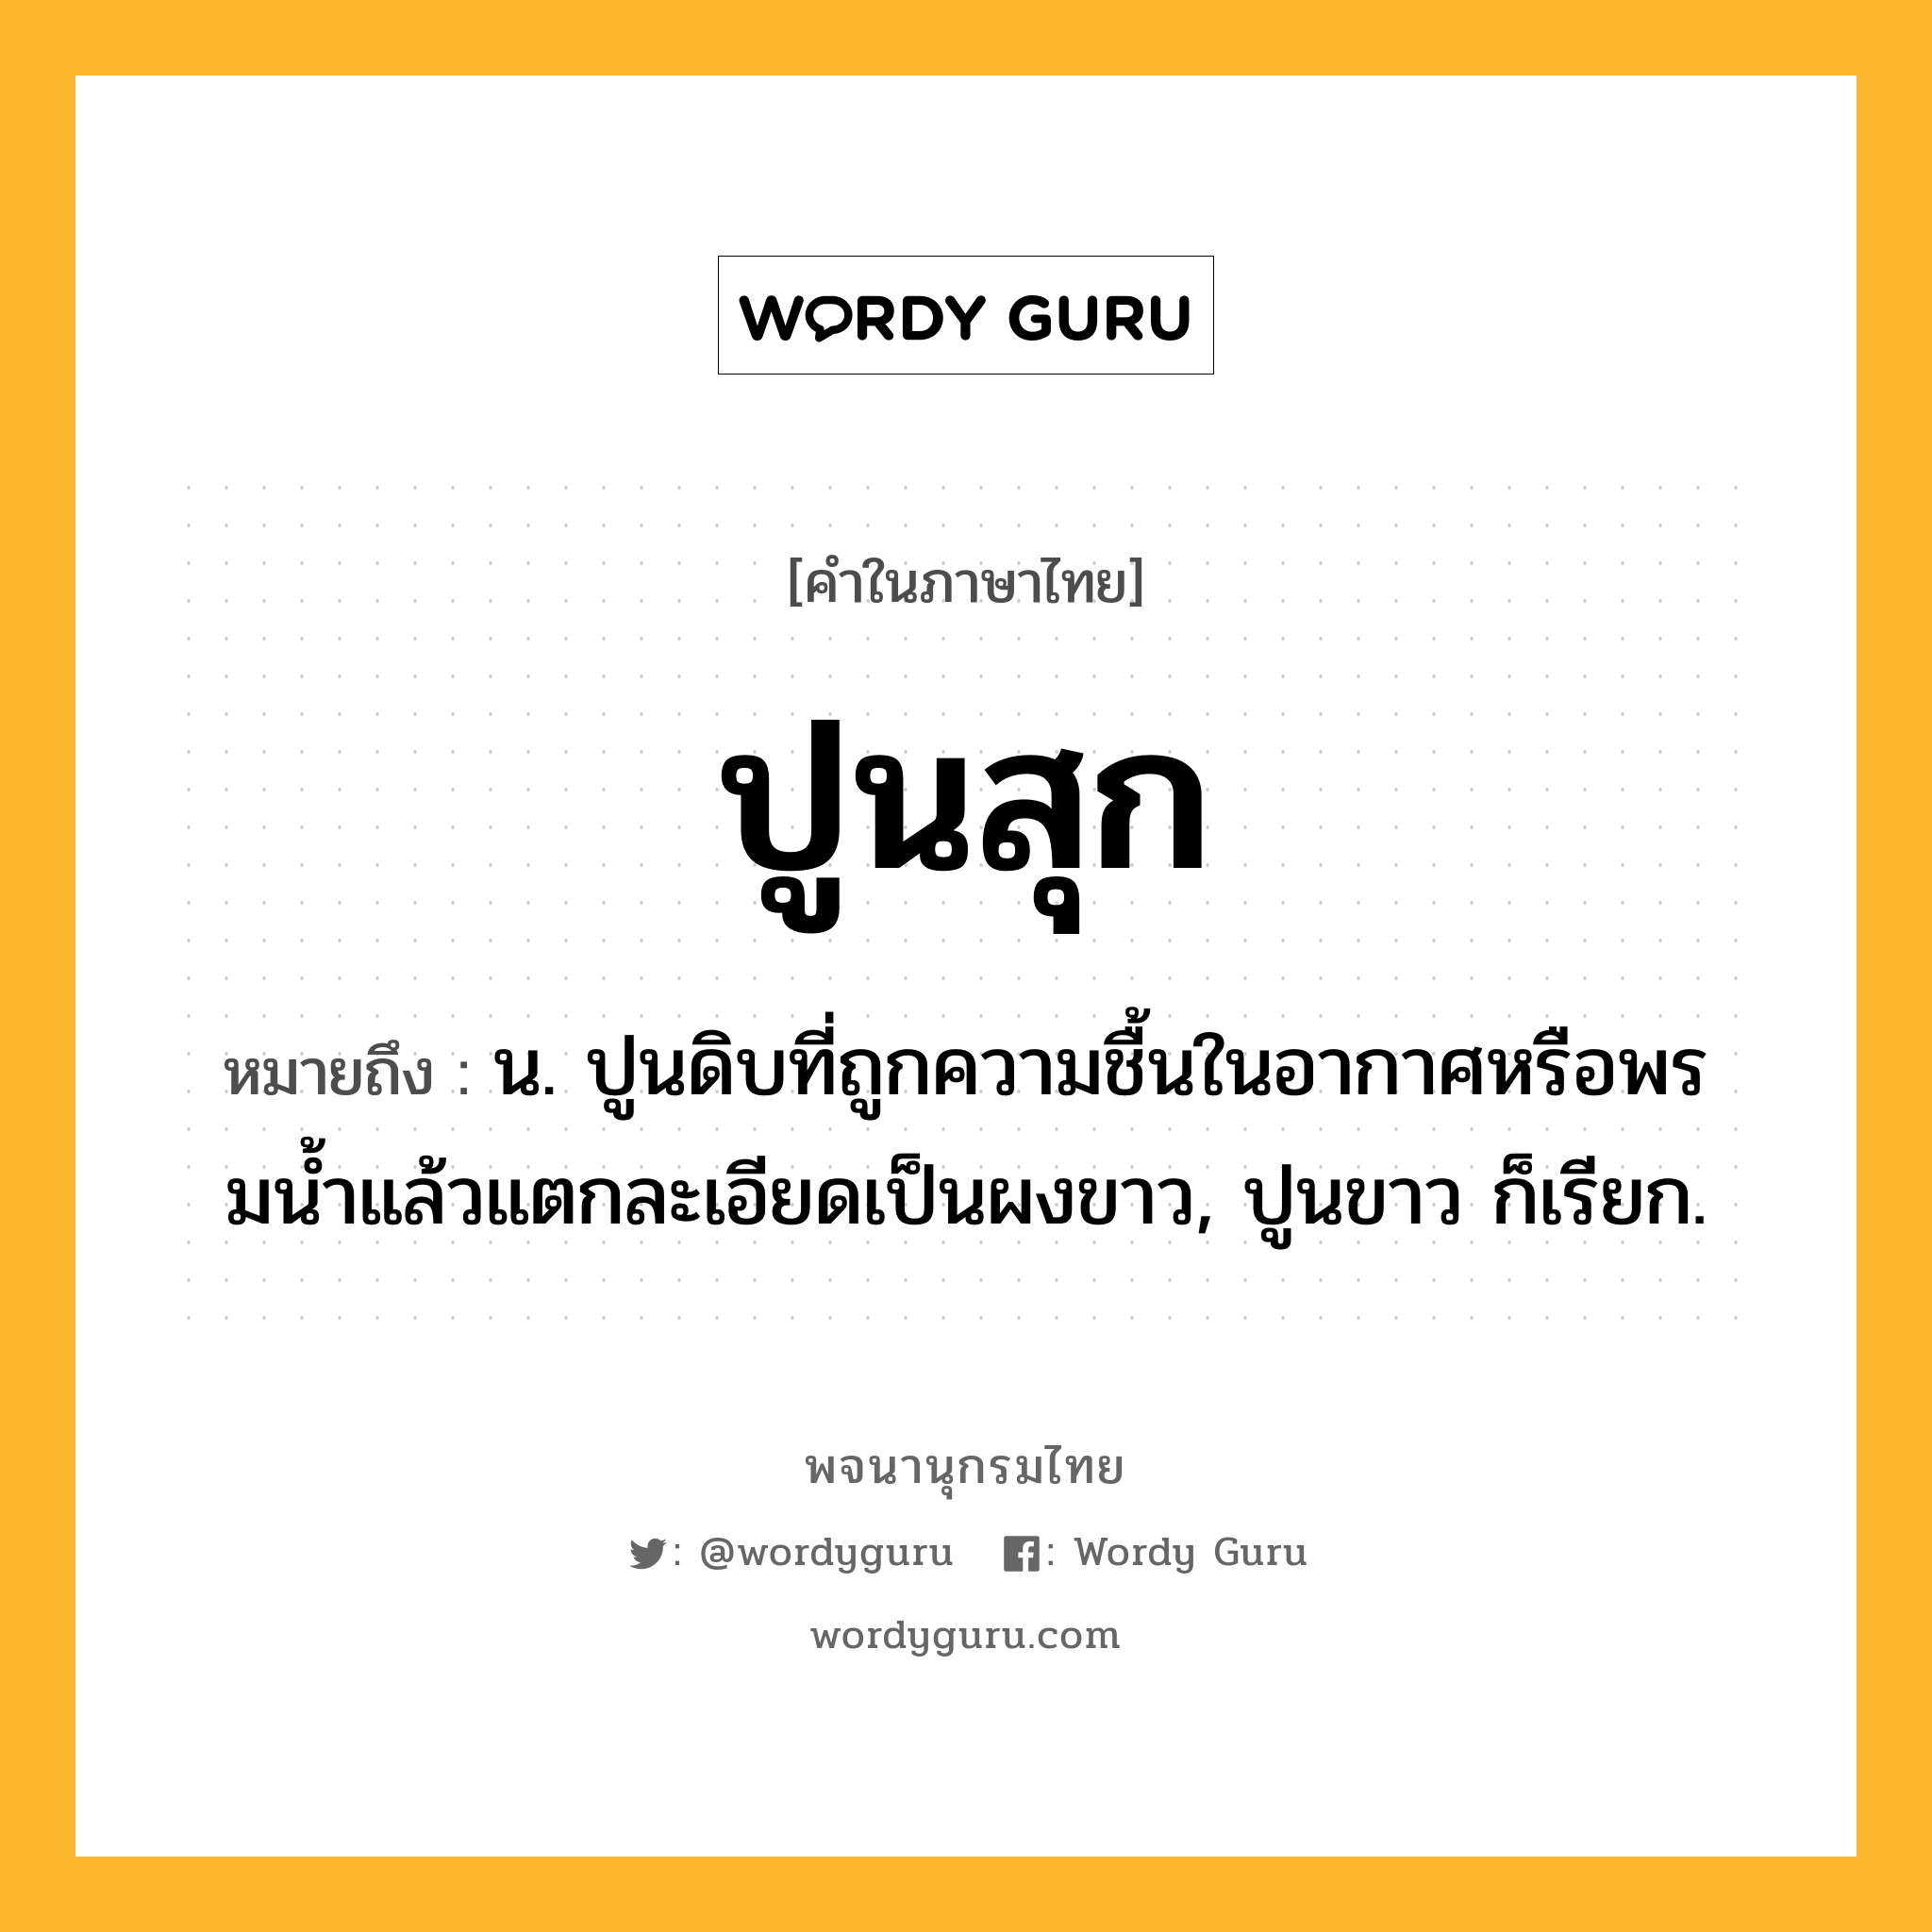 ปูนสุก ความหมาย หมายถึงอะไร?, คำในภาษาไทย ปูนสุก หมายถึง น. ปูนดิบที่ถูกความชื้นในอากาศหรือพรมนํ้าแล้วแตกละเอียดเป็นผงขาว, ปูนขาว ก็เรียก.